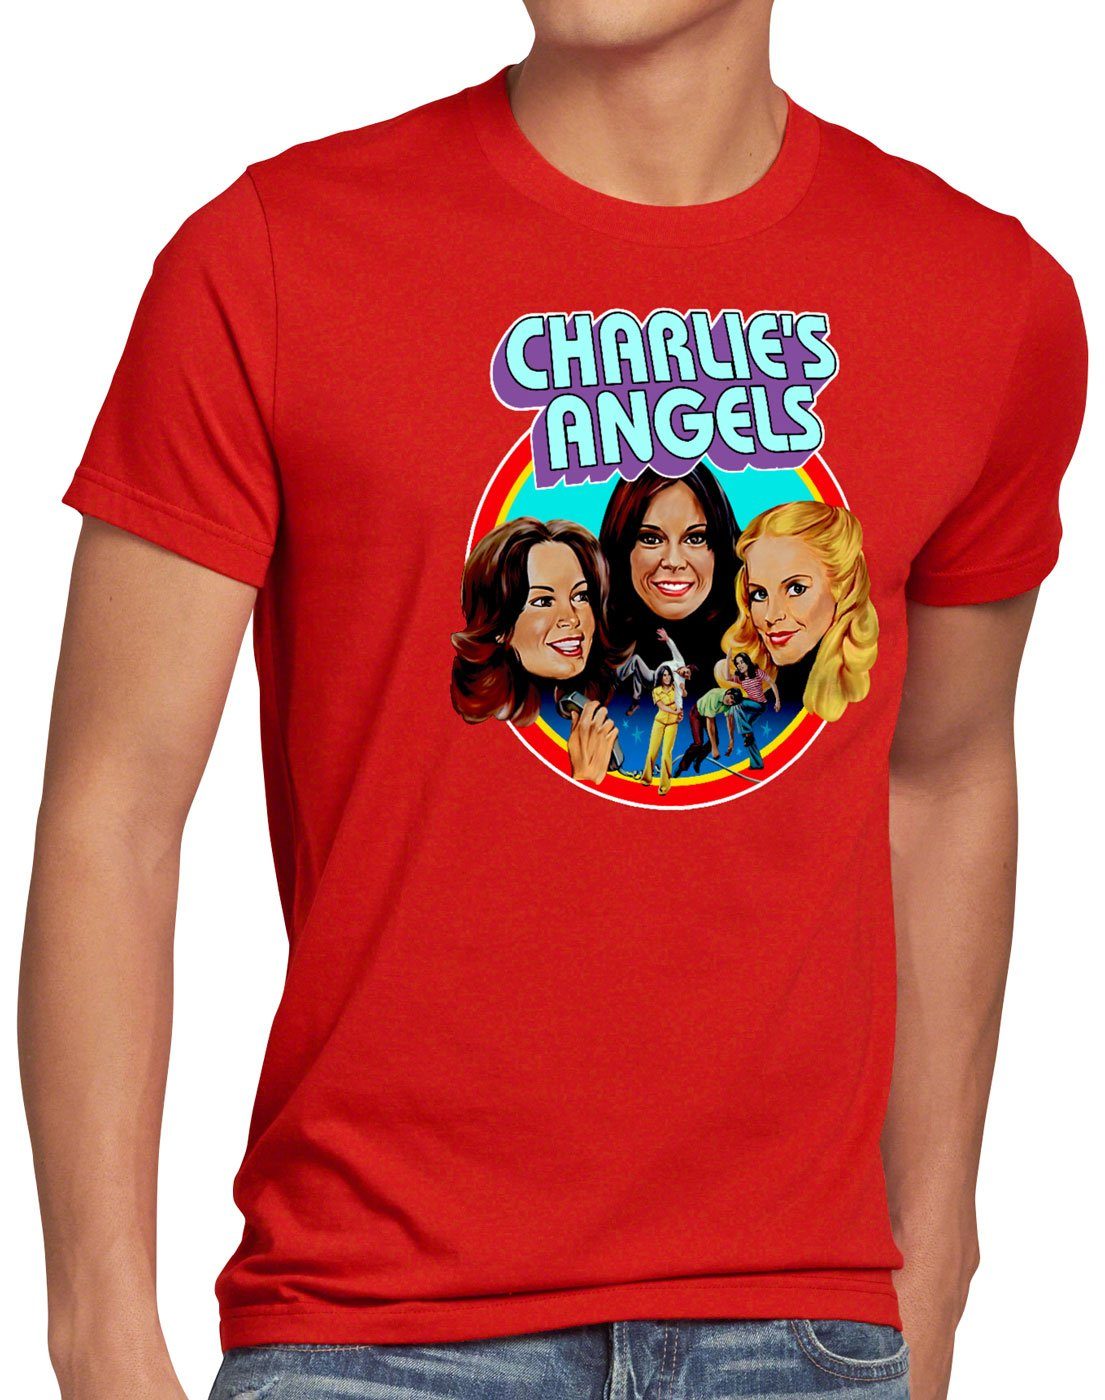 T-Shirt eingel Charlies drei Print-Shirt style3 Angels für Herren rot